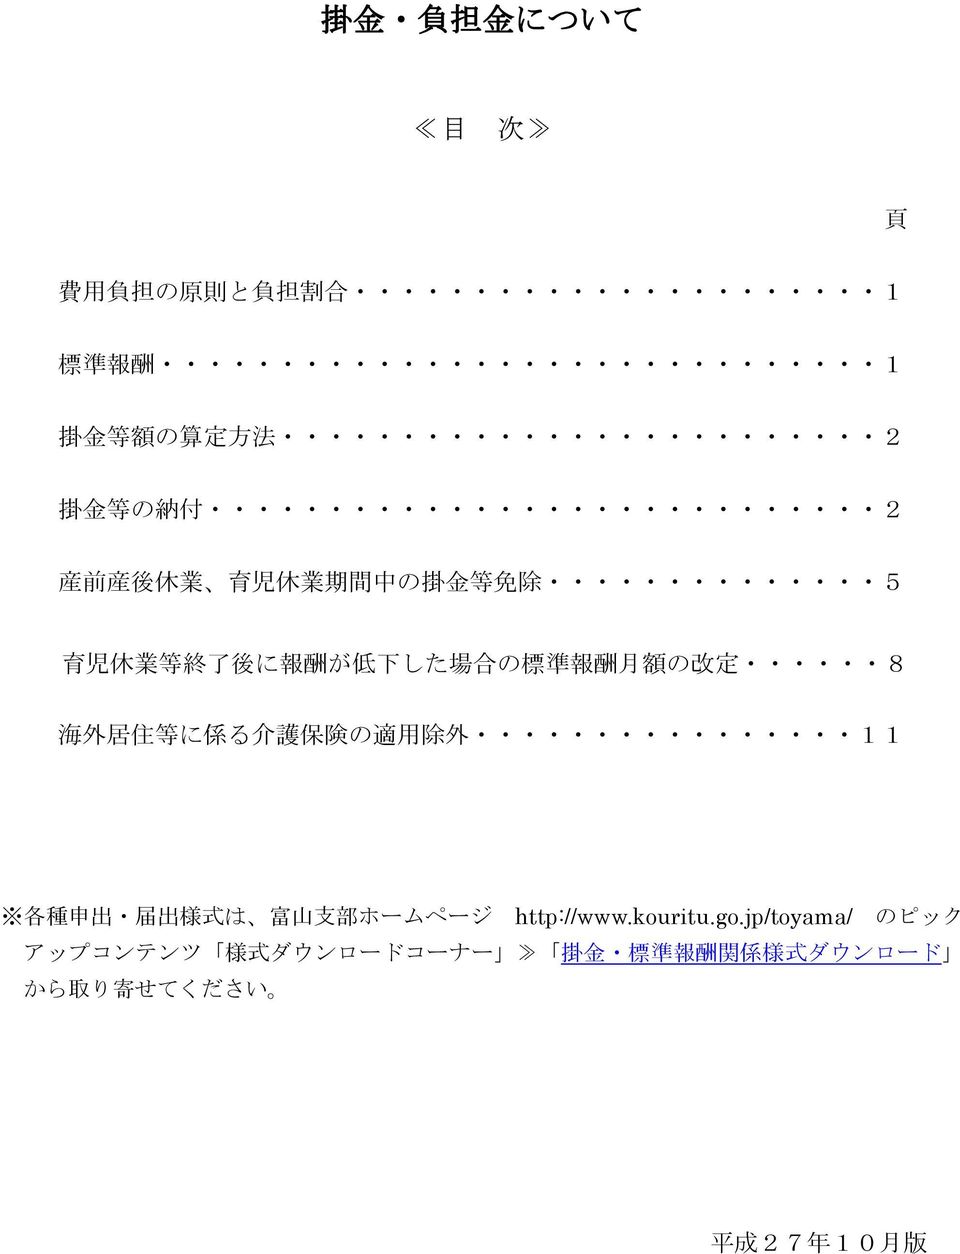 に 係 る 介 護 保 険 の 適 用 除 外 11 各 種 申 出 届 出 様 式 は 富 山 支 部 ホームページ http://www.kouritu.go.